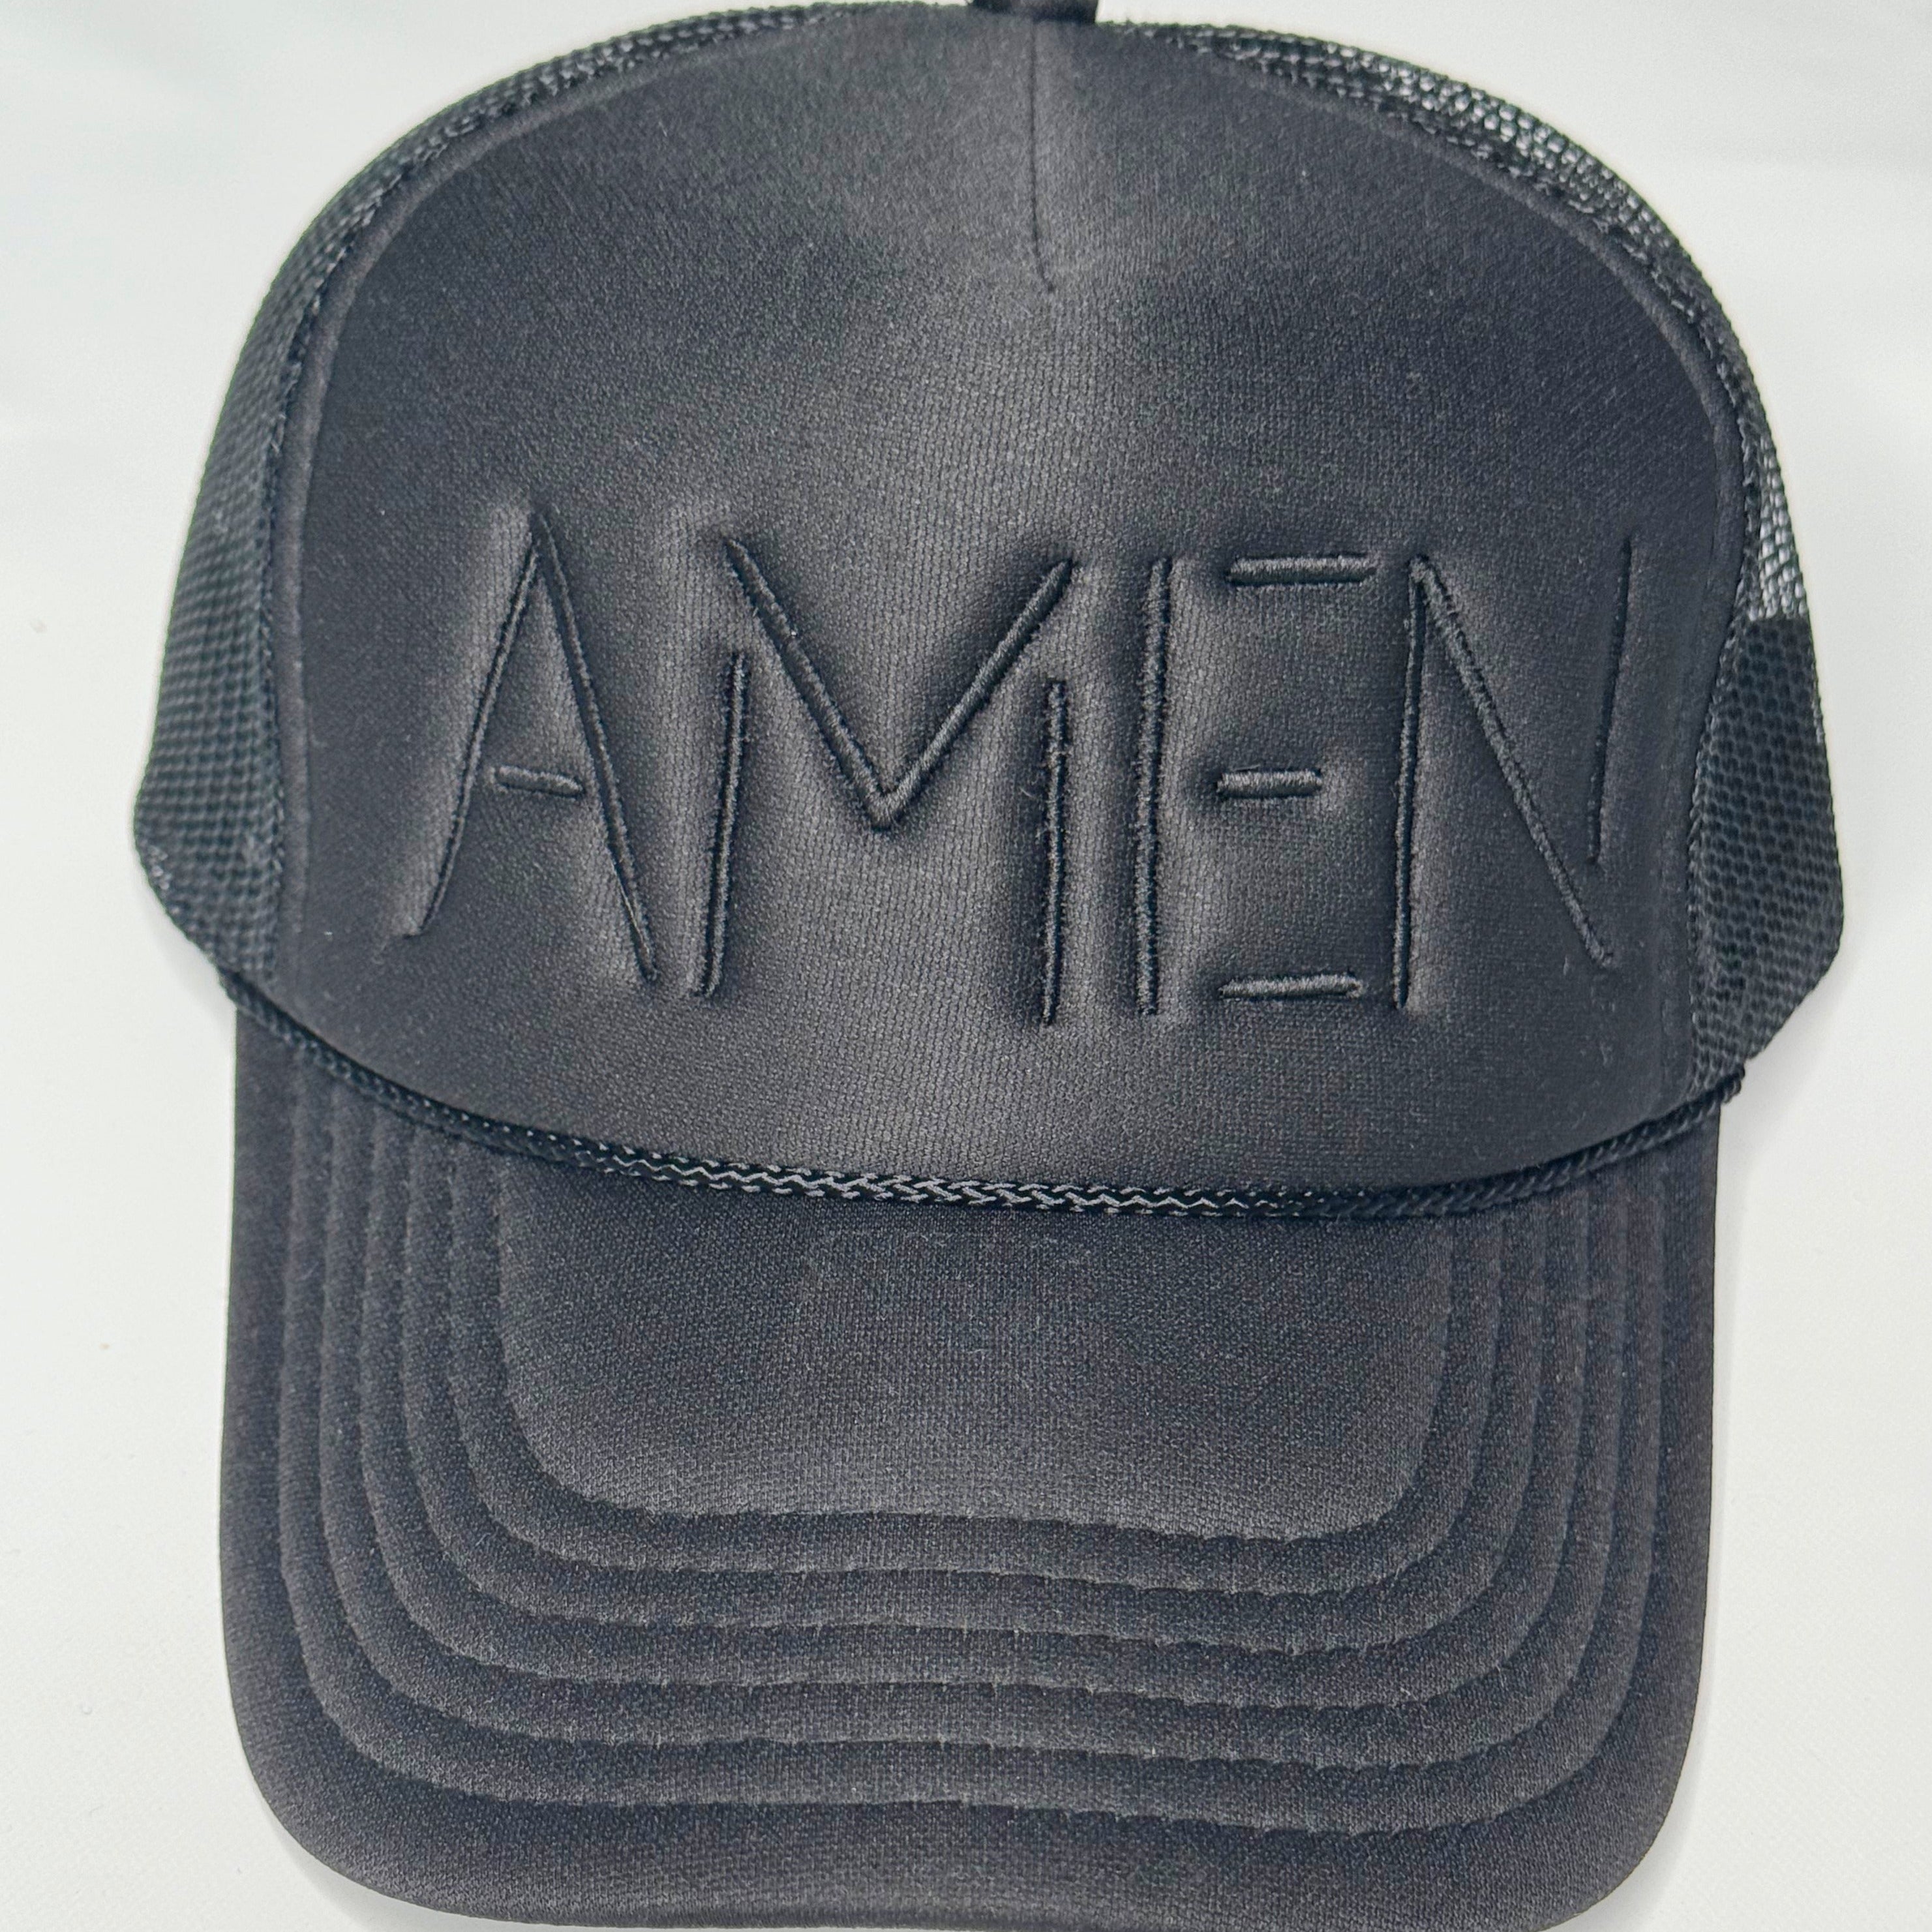 Amen Trucker Hats